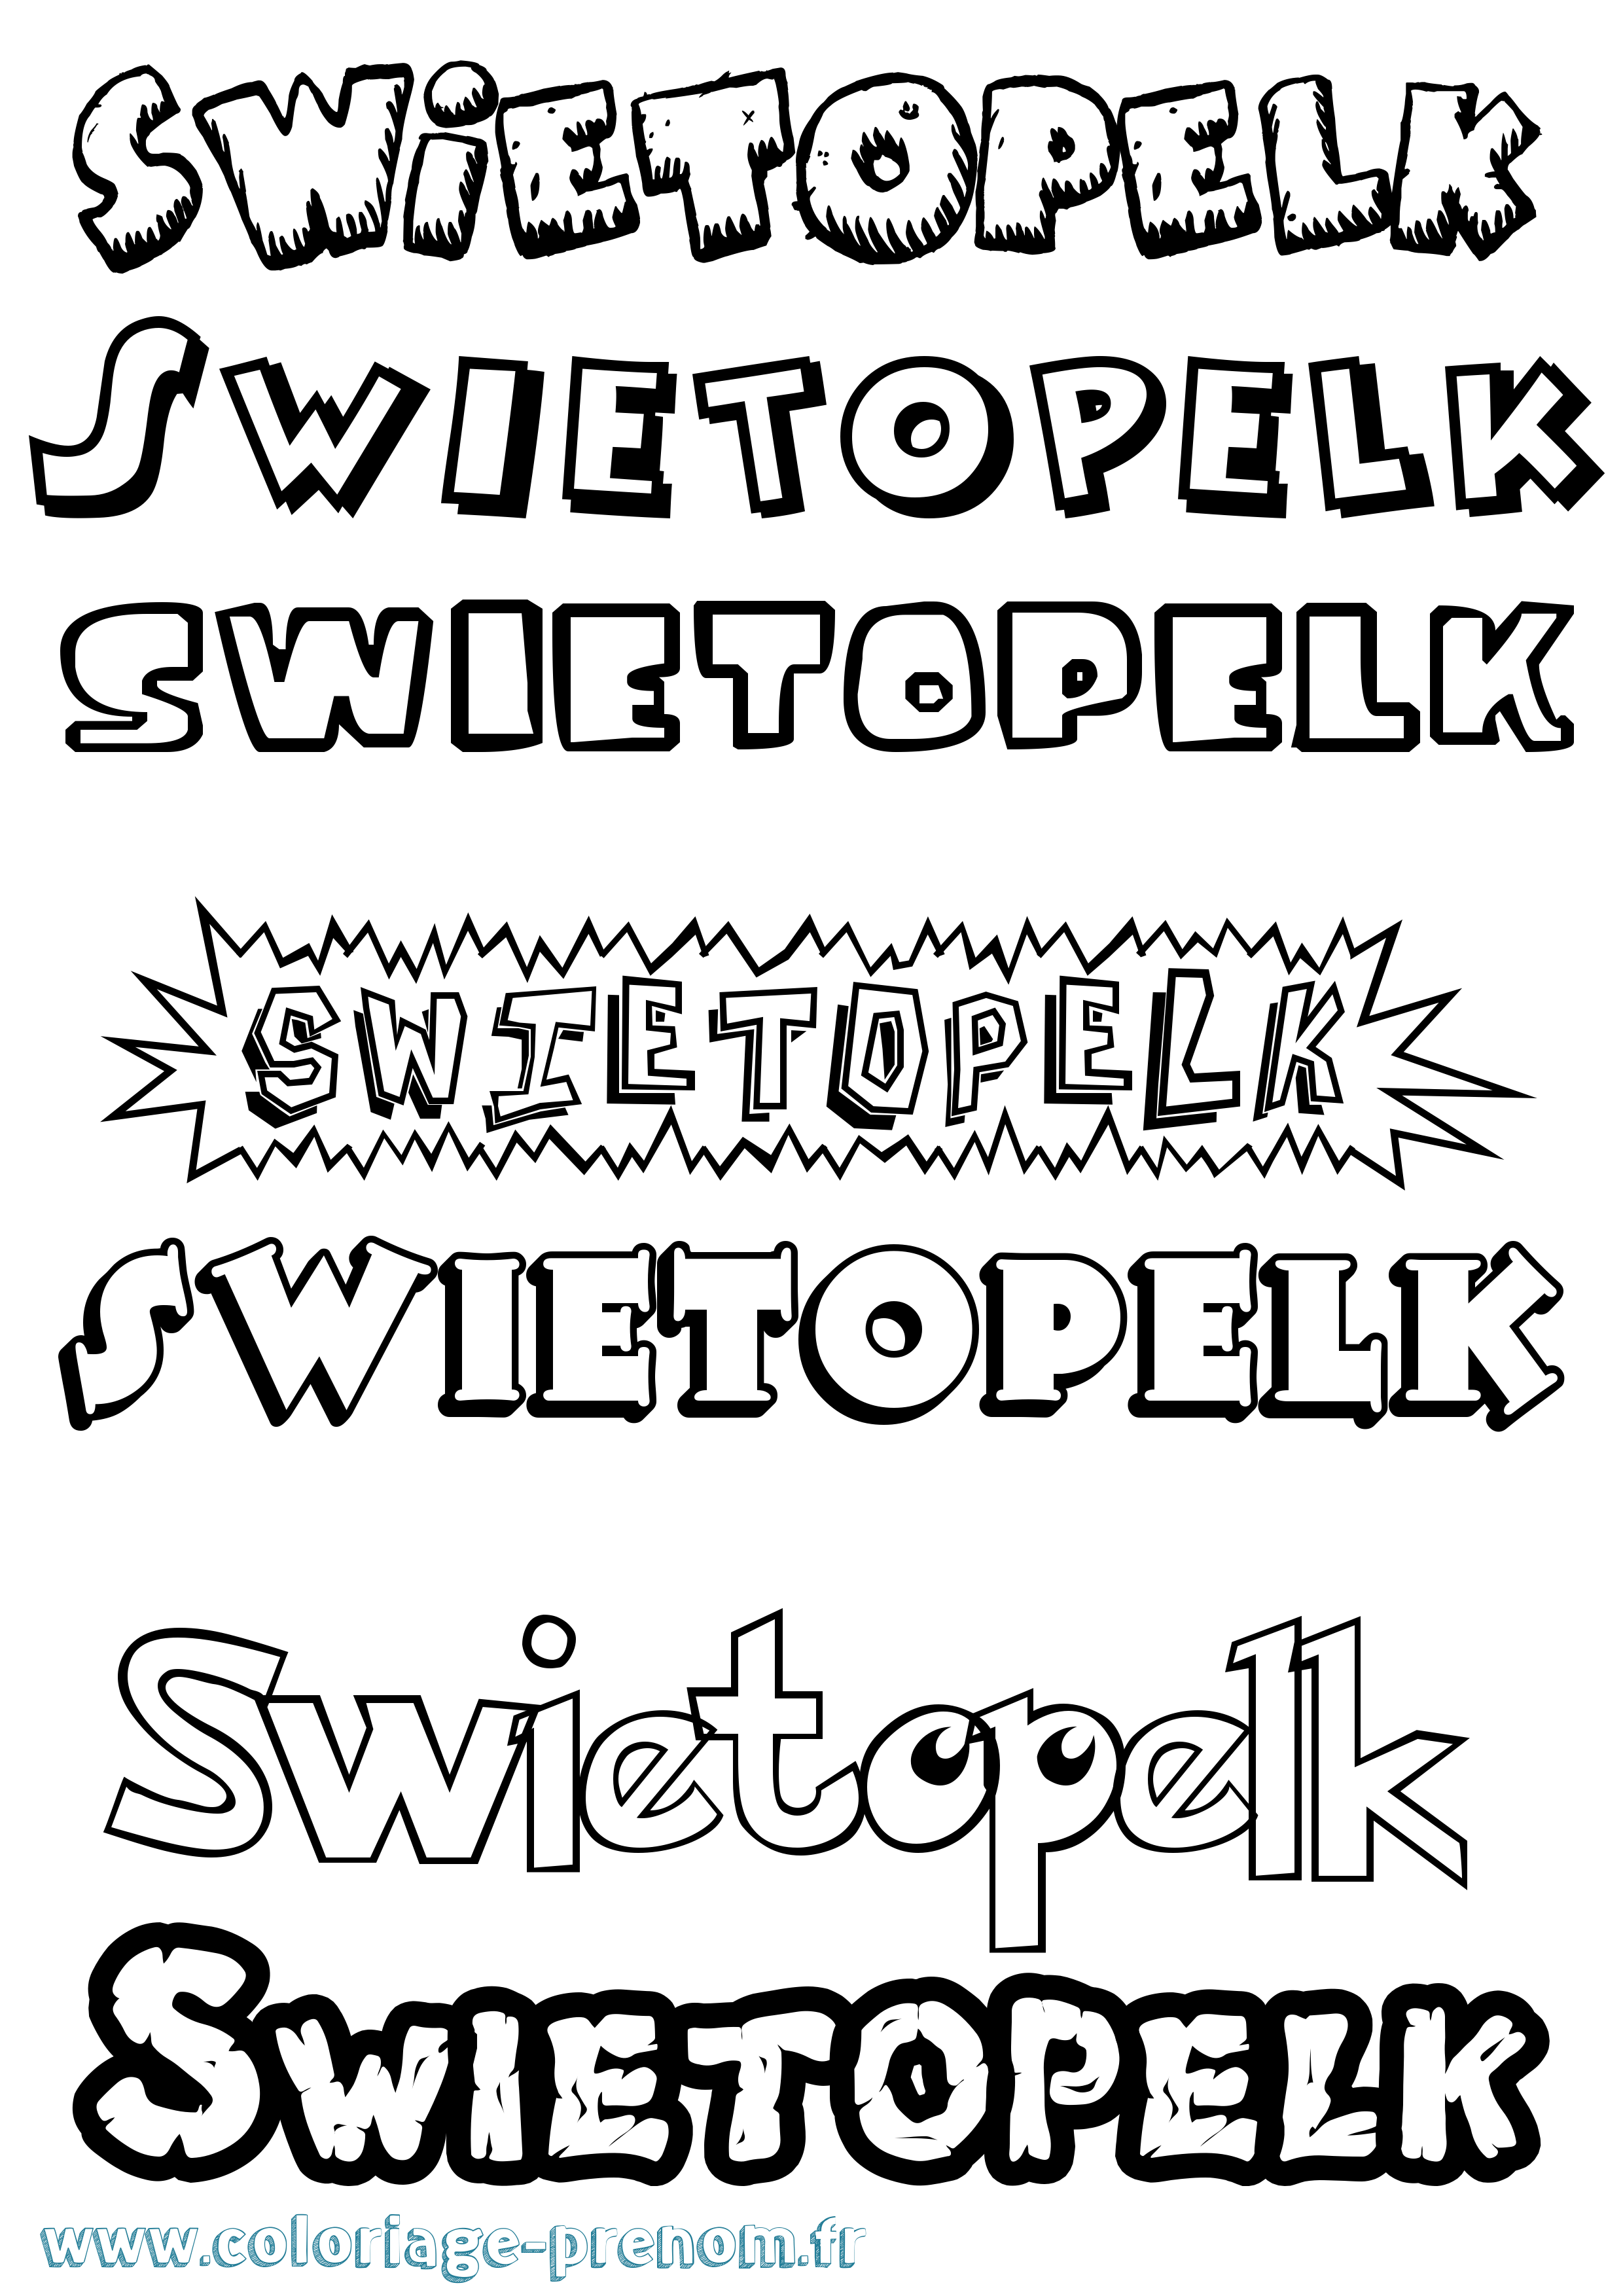 Coloriage prénom Swietopelk Dessin Animé